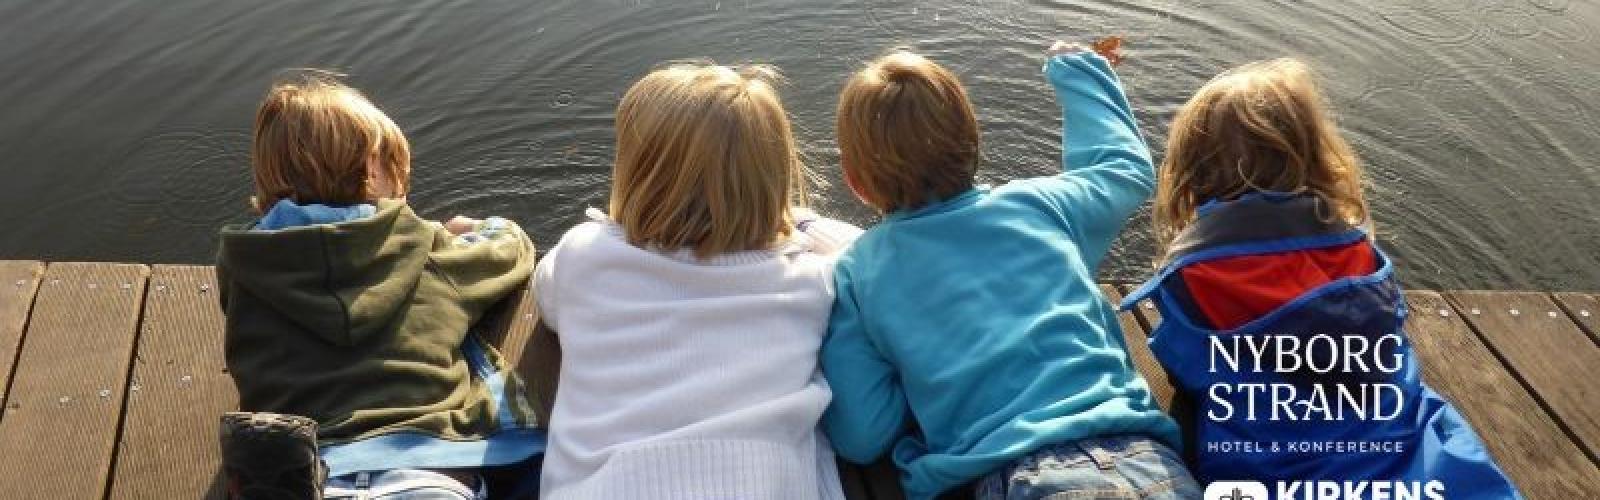 Kirkens Korshær samarbejdet med Nyborg Strand om at give udsatte børnefamilier gode oplevelser  i sommerferien